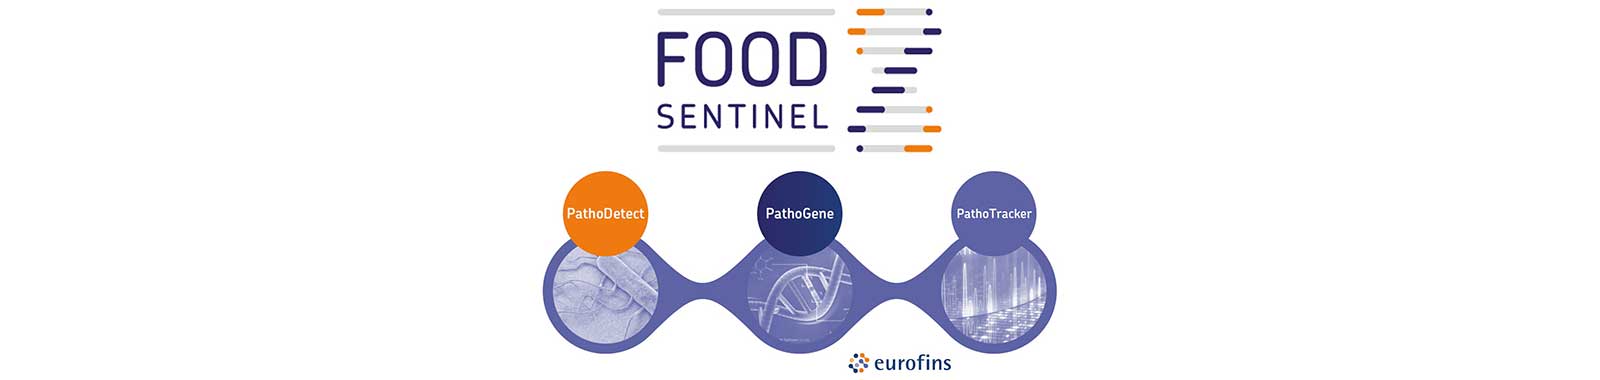 Food Sentinel